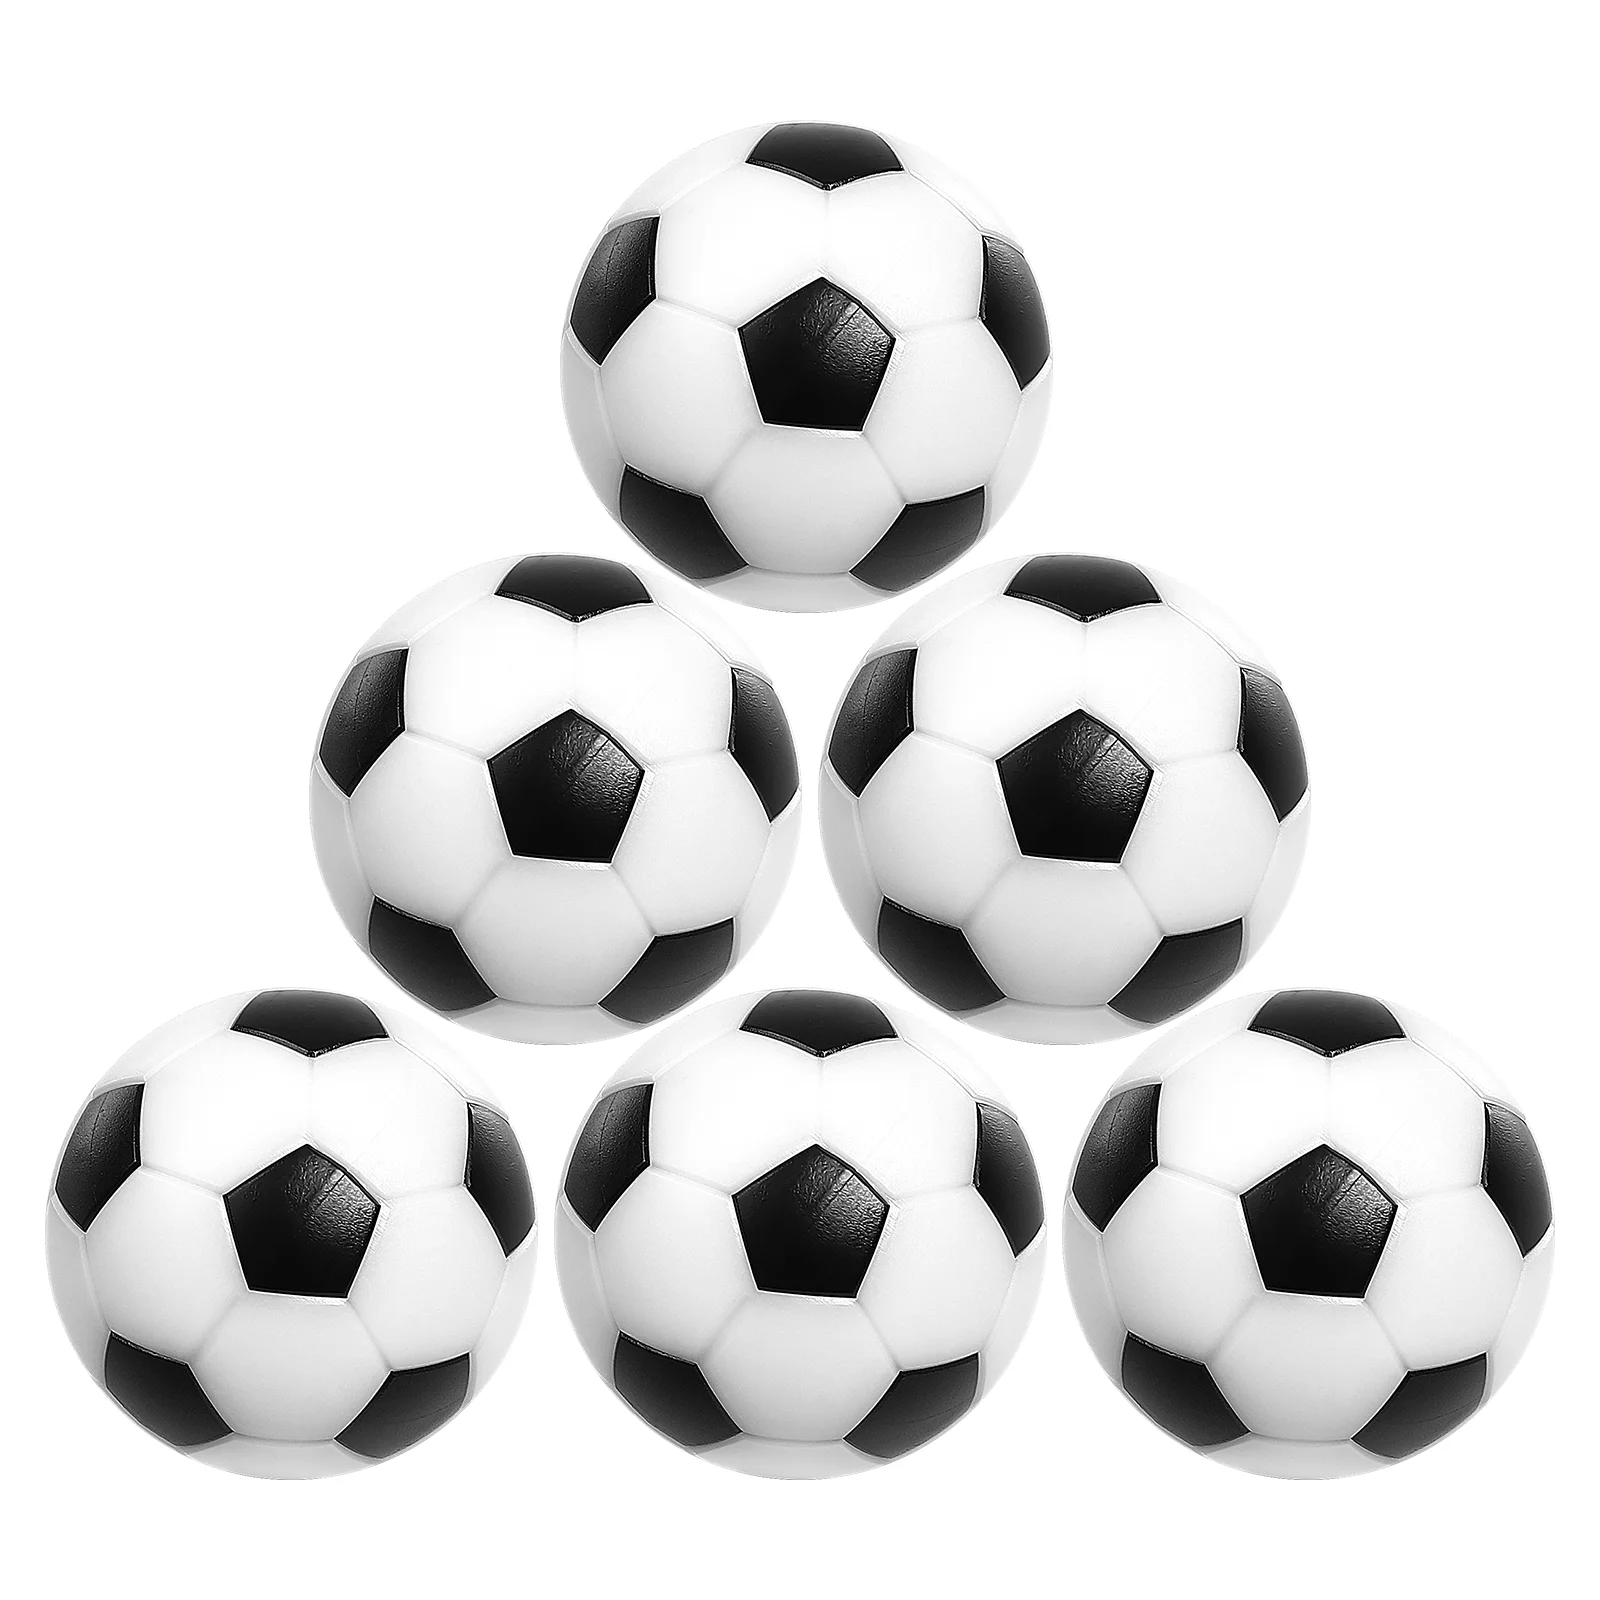 

6 шт., настольные футбольные мини-мячи, черно-белые футбольные игрушки (32 мм)